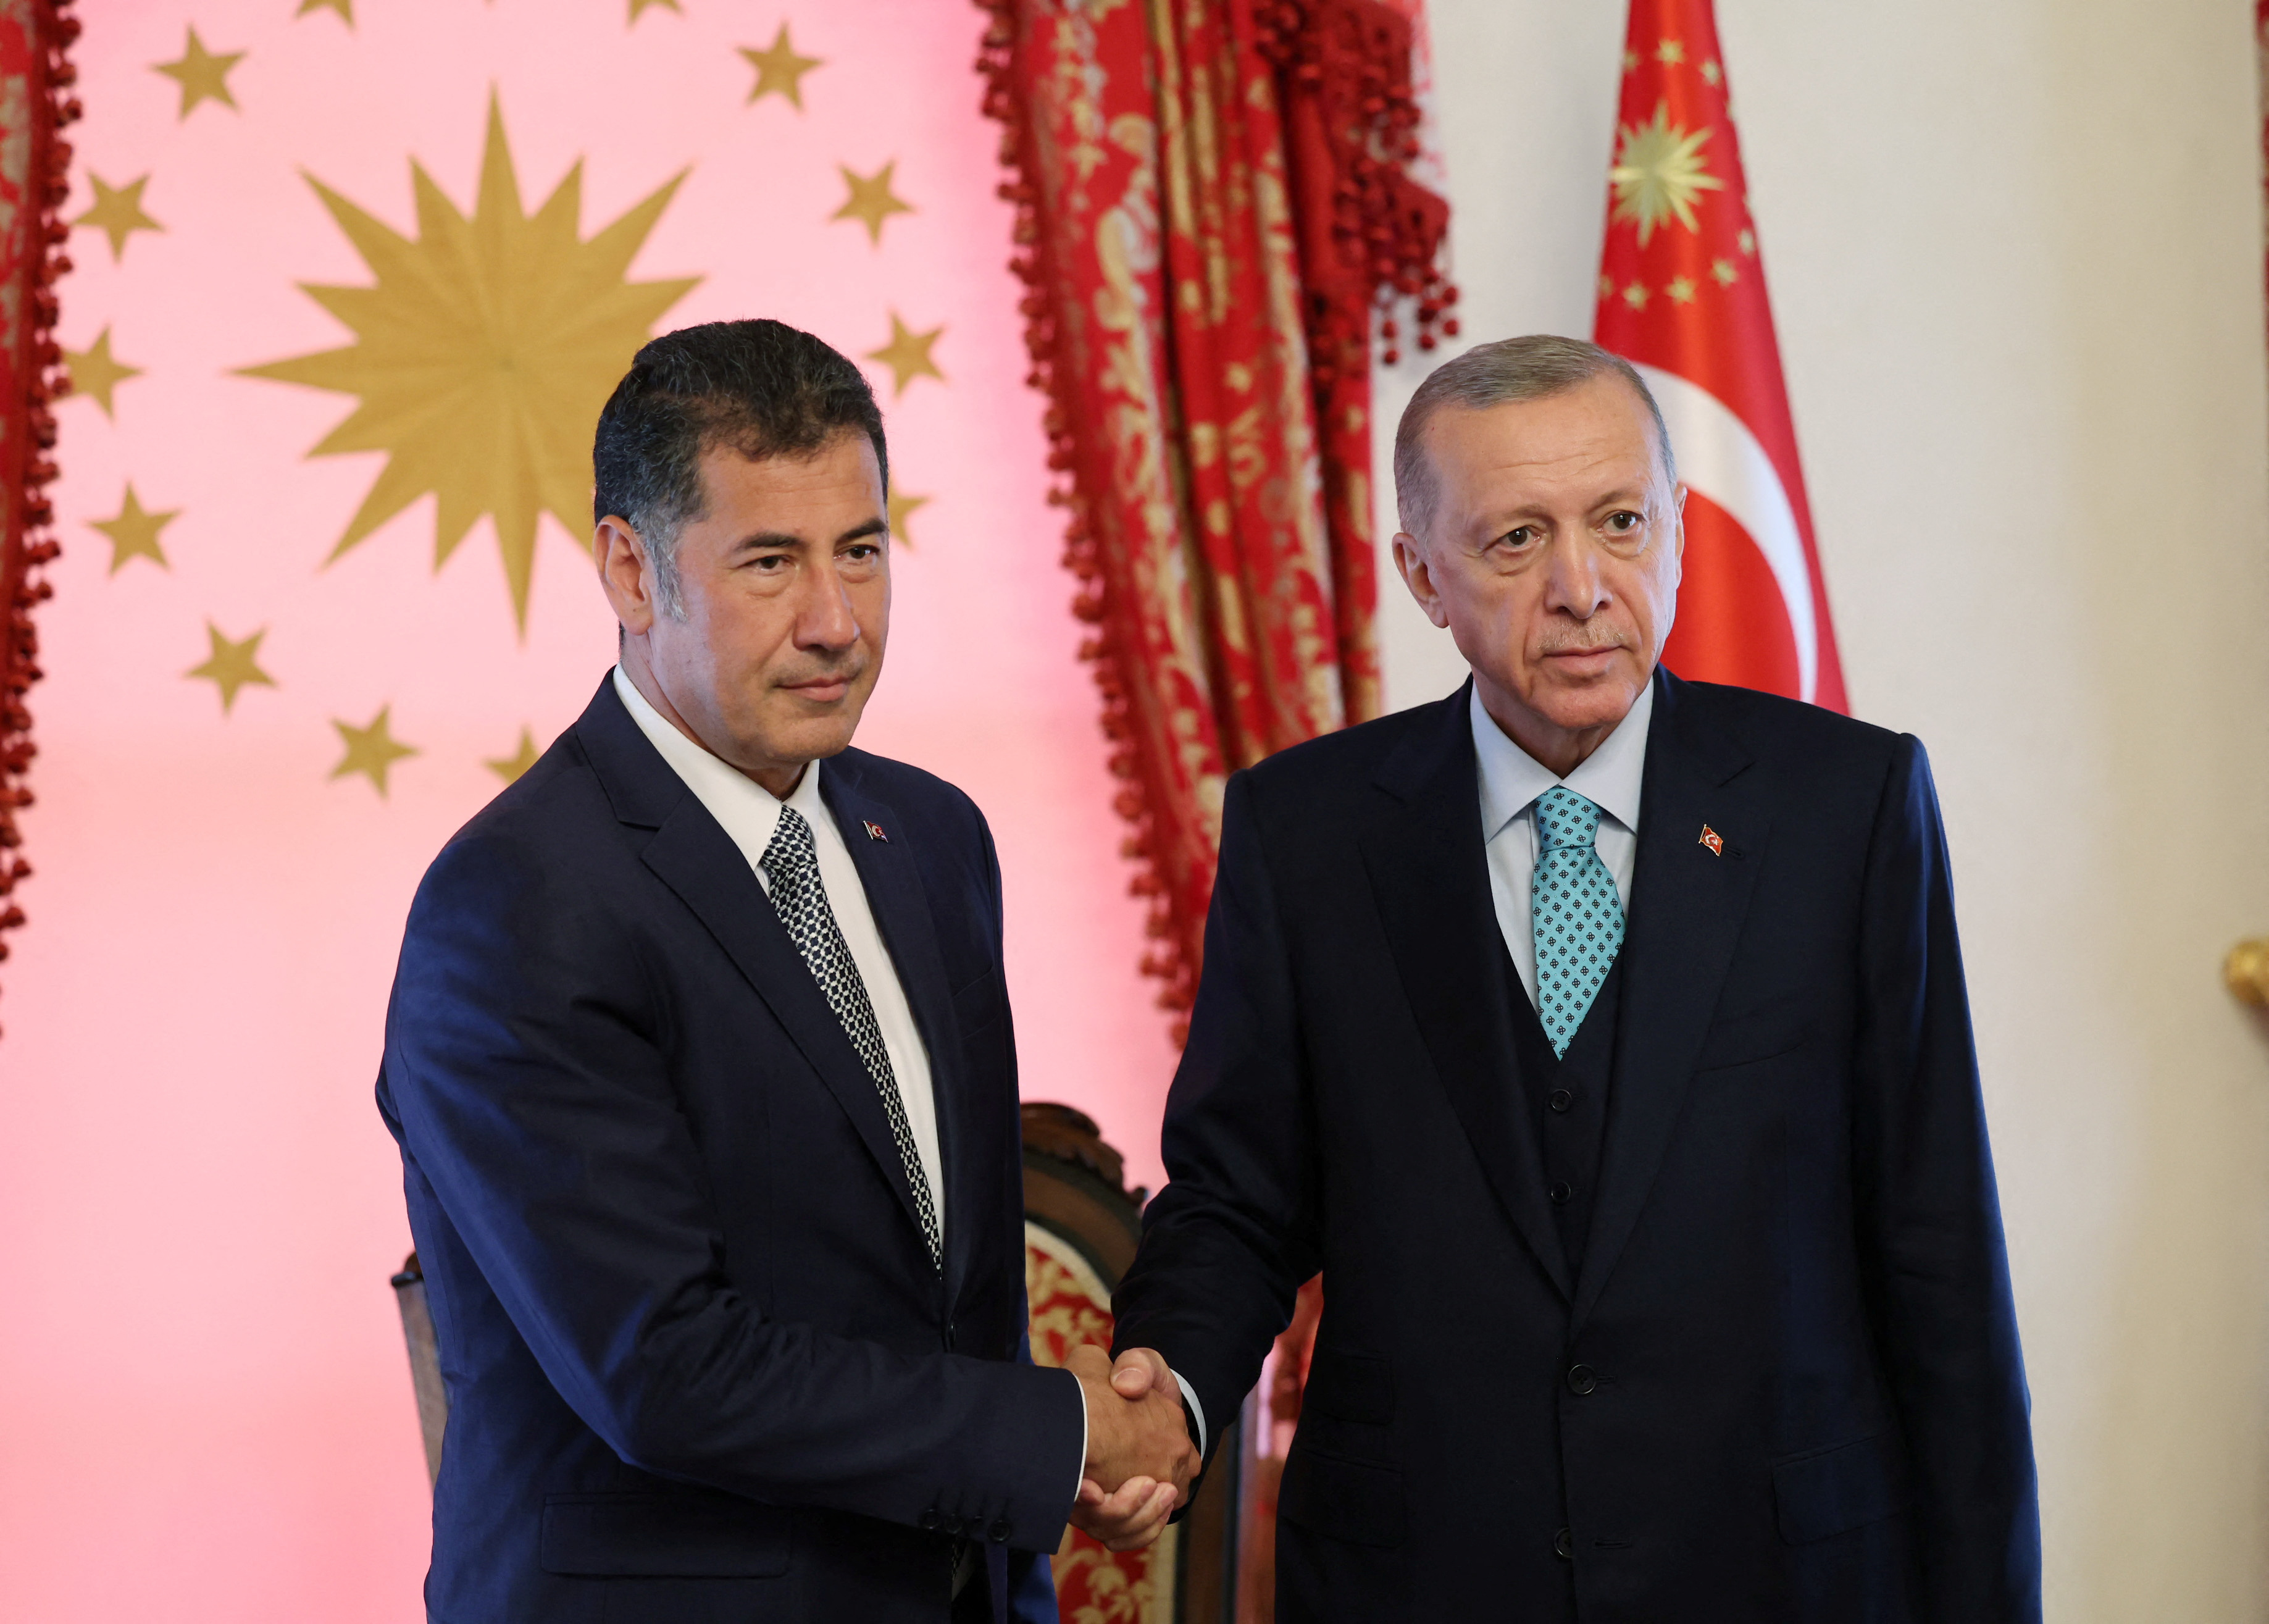 El líder ultranacionalista turco Sinan Ogan respaldará al presidente Recep Tayyip Erdogan en el ballotage del próximo domingo (Murat Cetinmuhurdar/PPO/Handout via REUTERS)